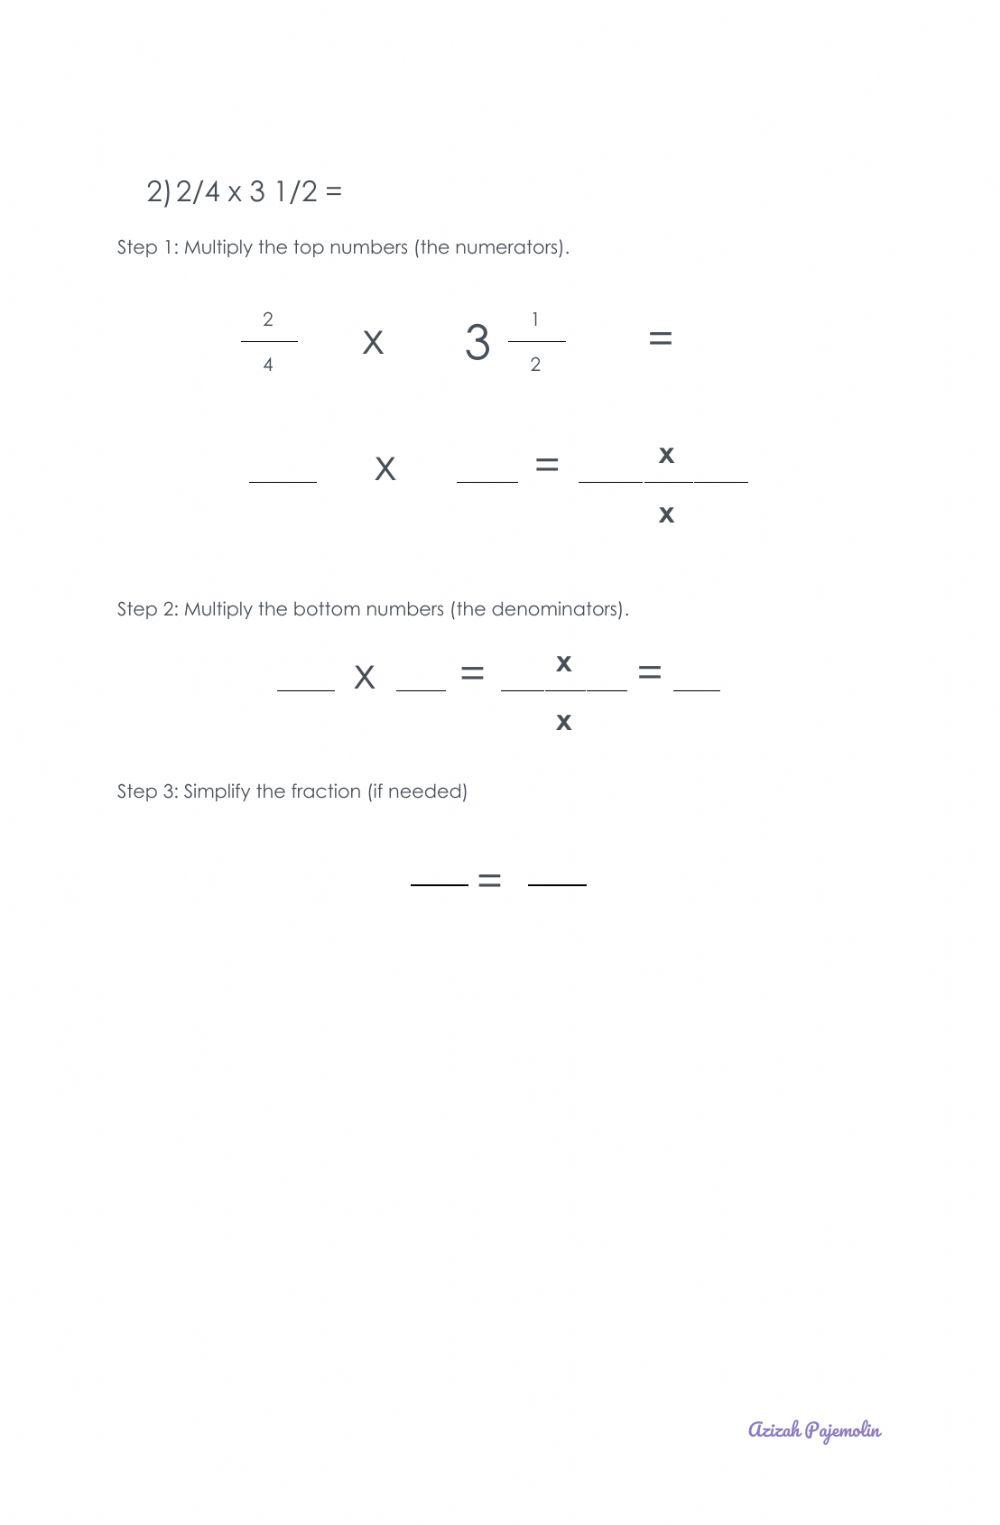 Worksheet on Multiplying Fraction